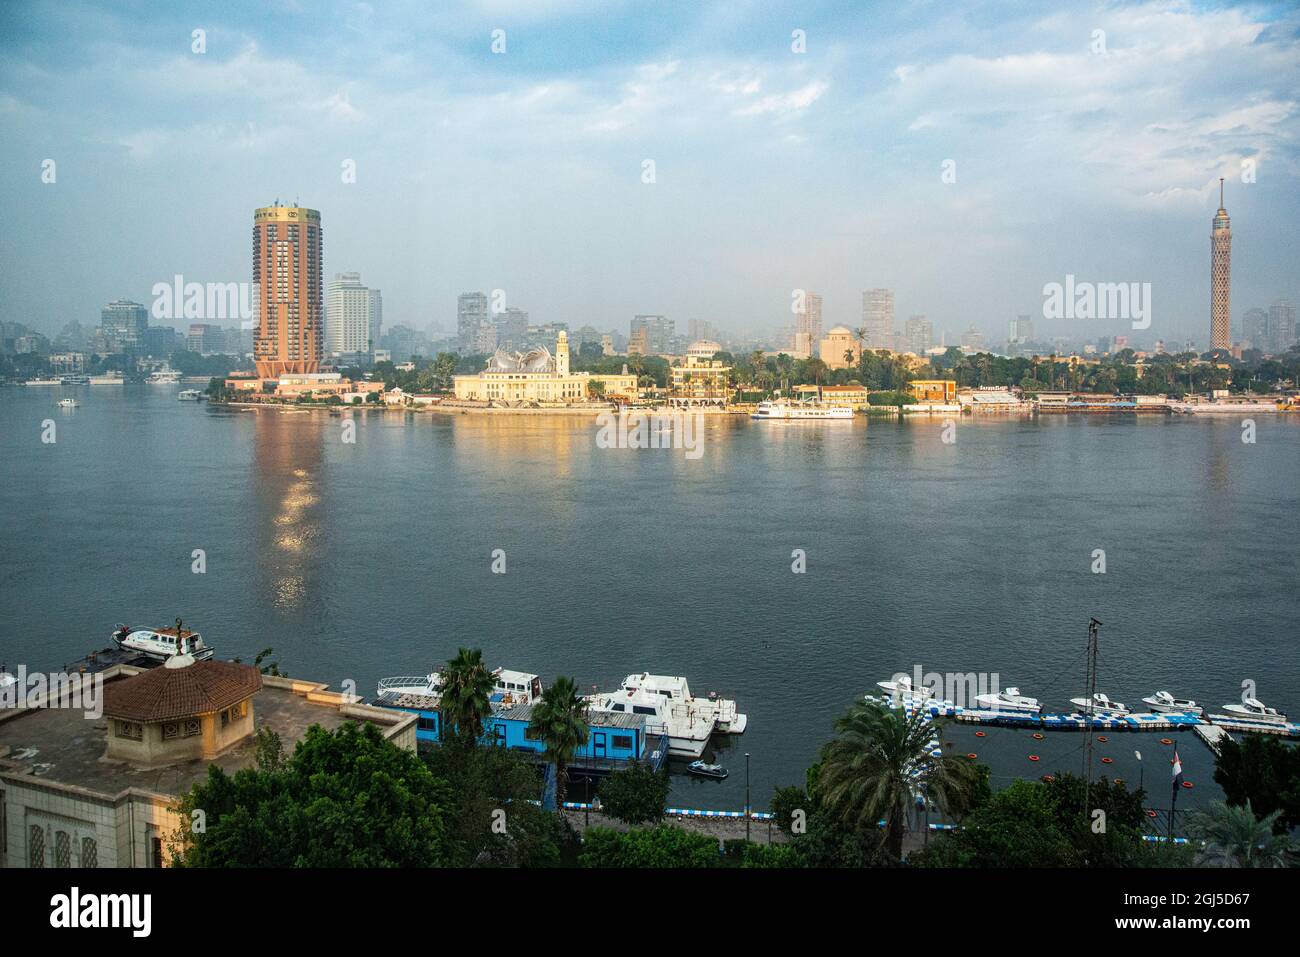 Nilexpedition, Niederägypten, Blick am frühen Morgen auf den Nil, die Insel Al Jazeera und das Westjordanland vom 8. Stock des Kempinski Hotels Stockfoto